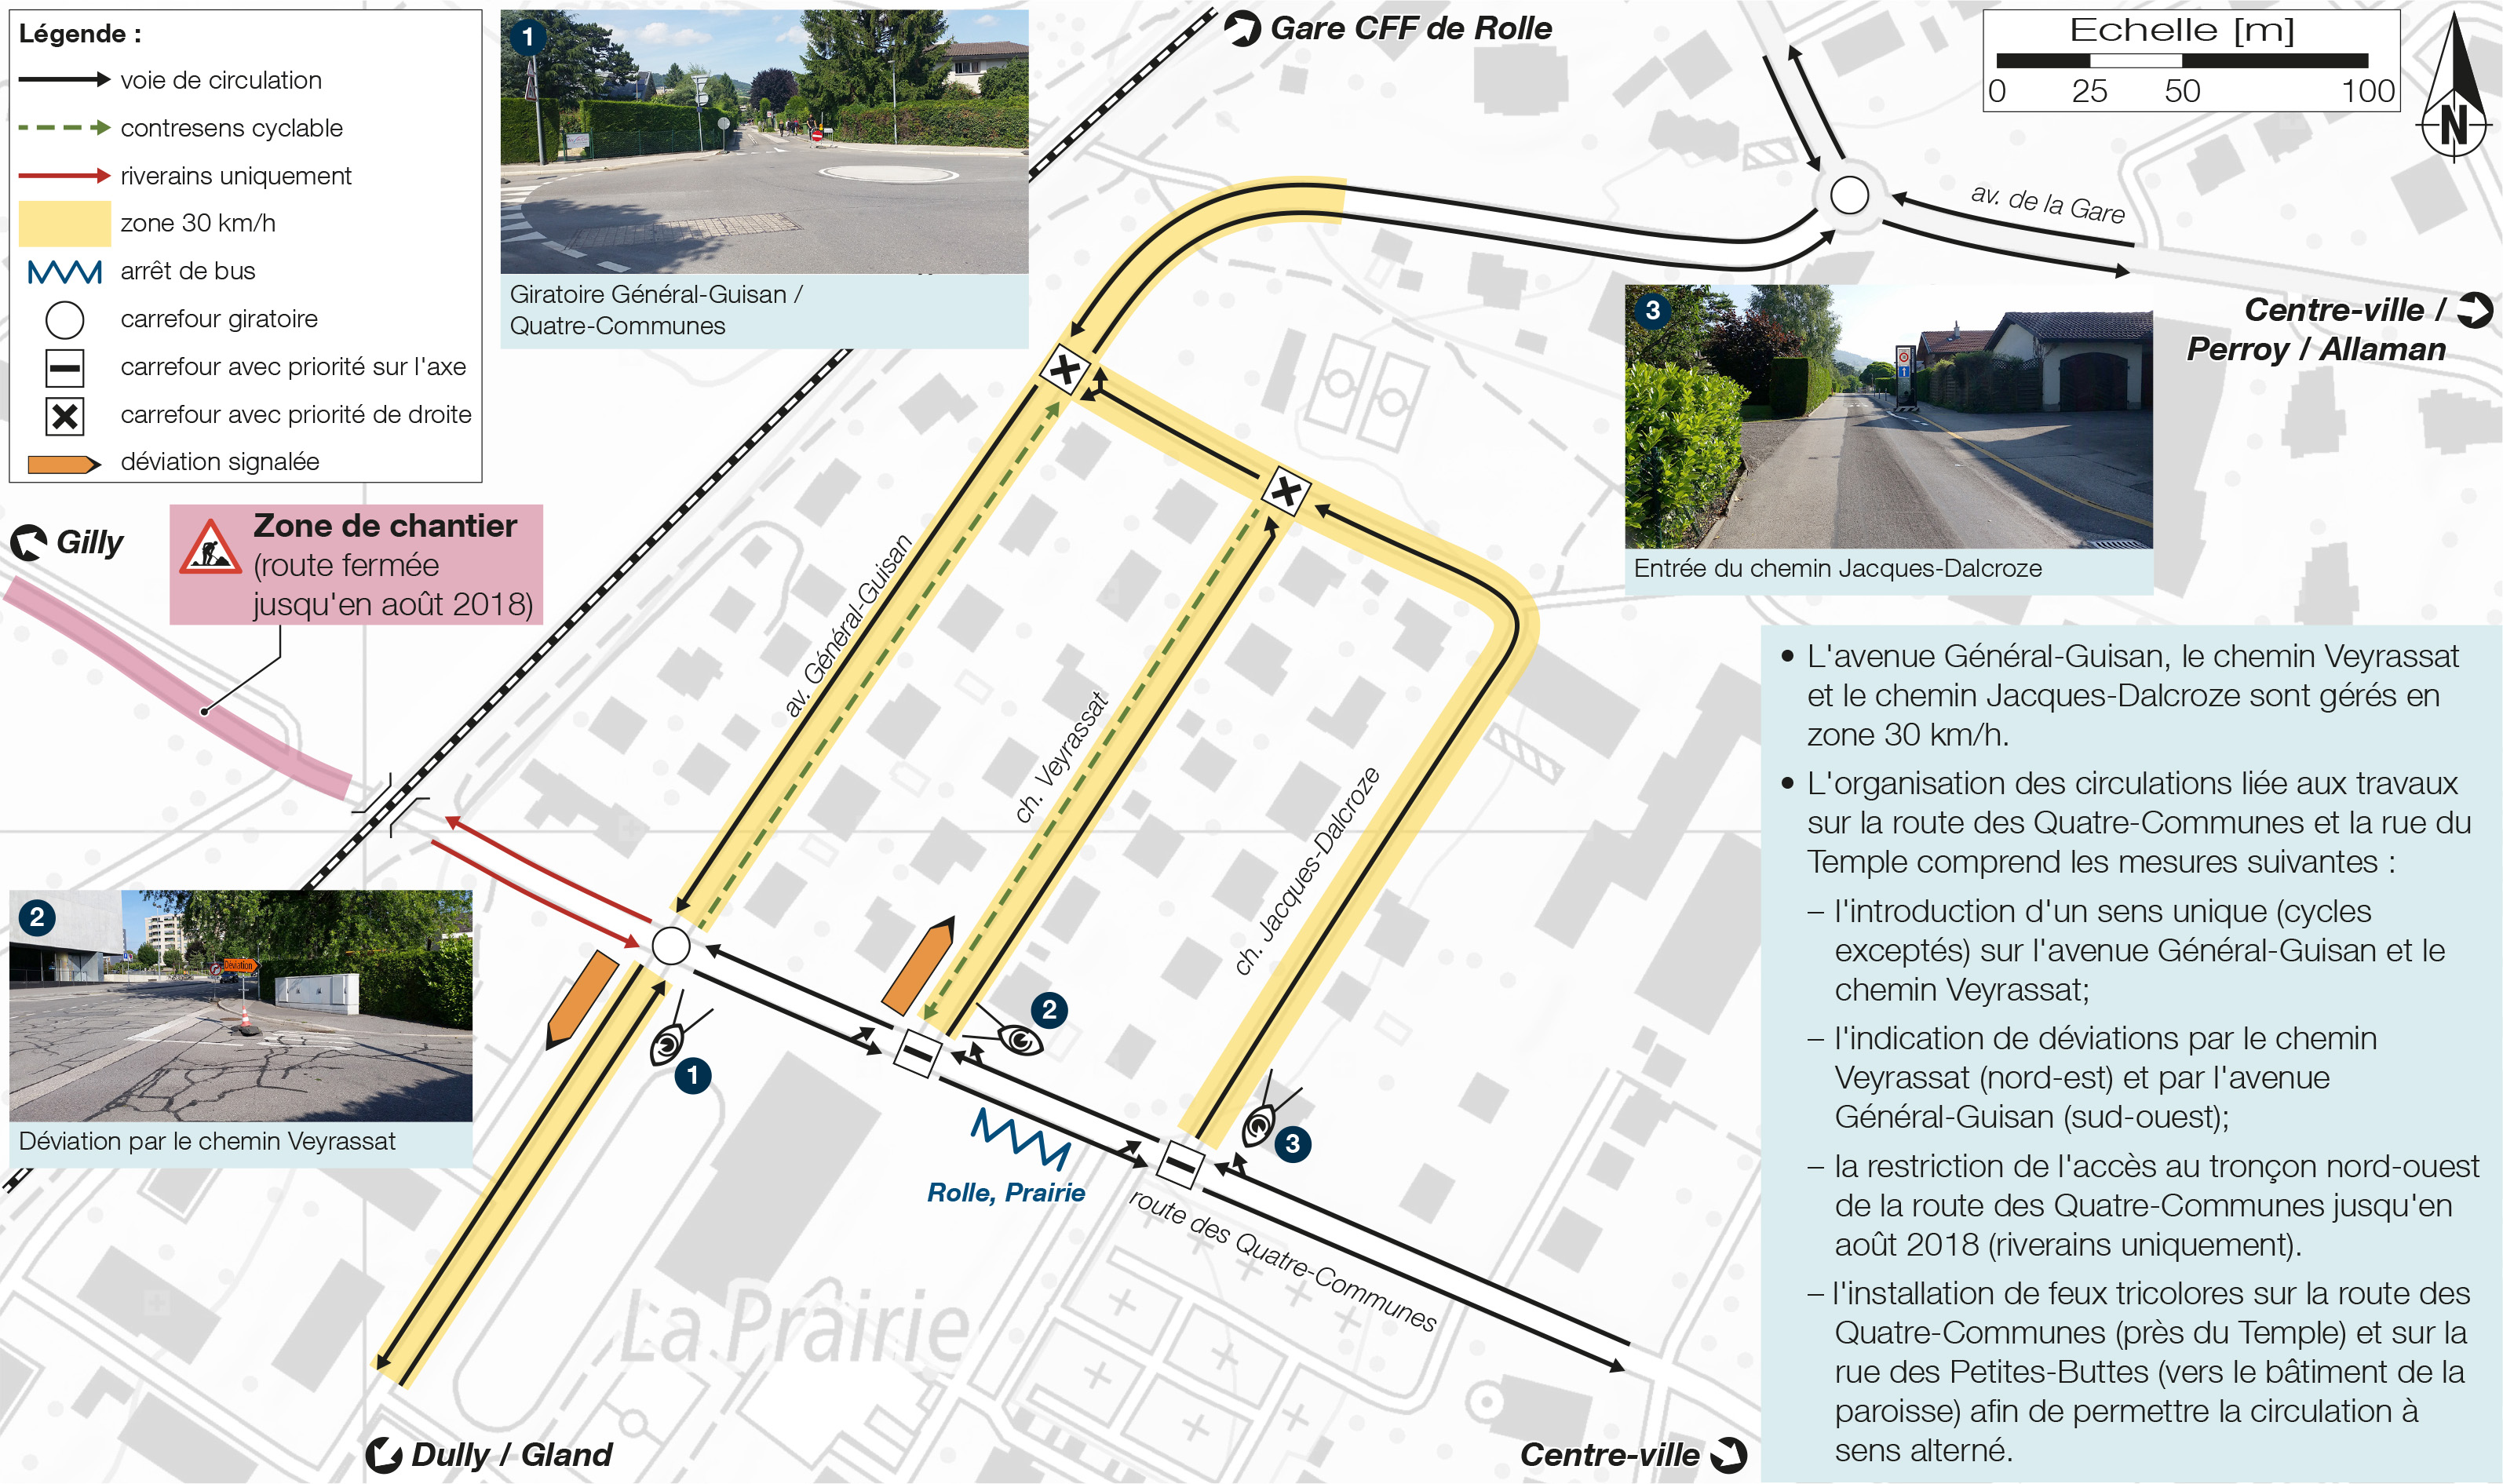 Réorganisation des circulations dans le secteur Général-Guisan / Veyrassat / Jaques-Dalcroze